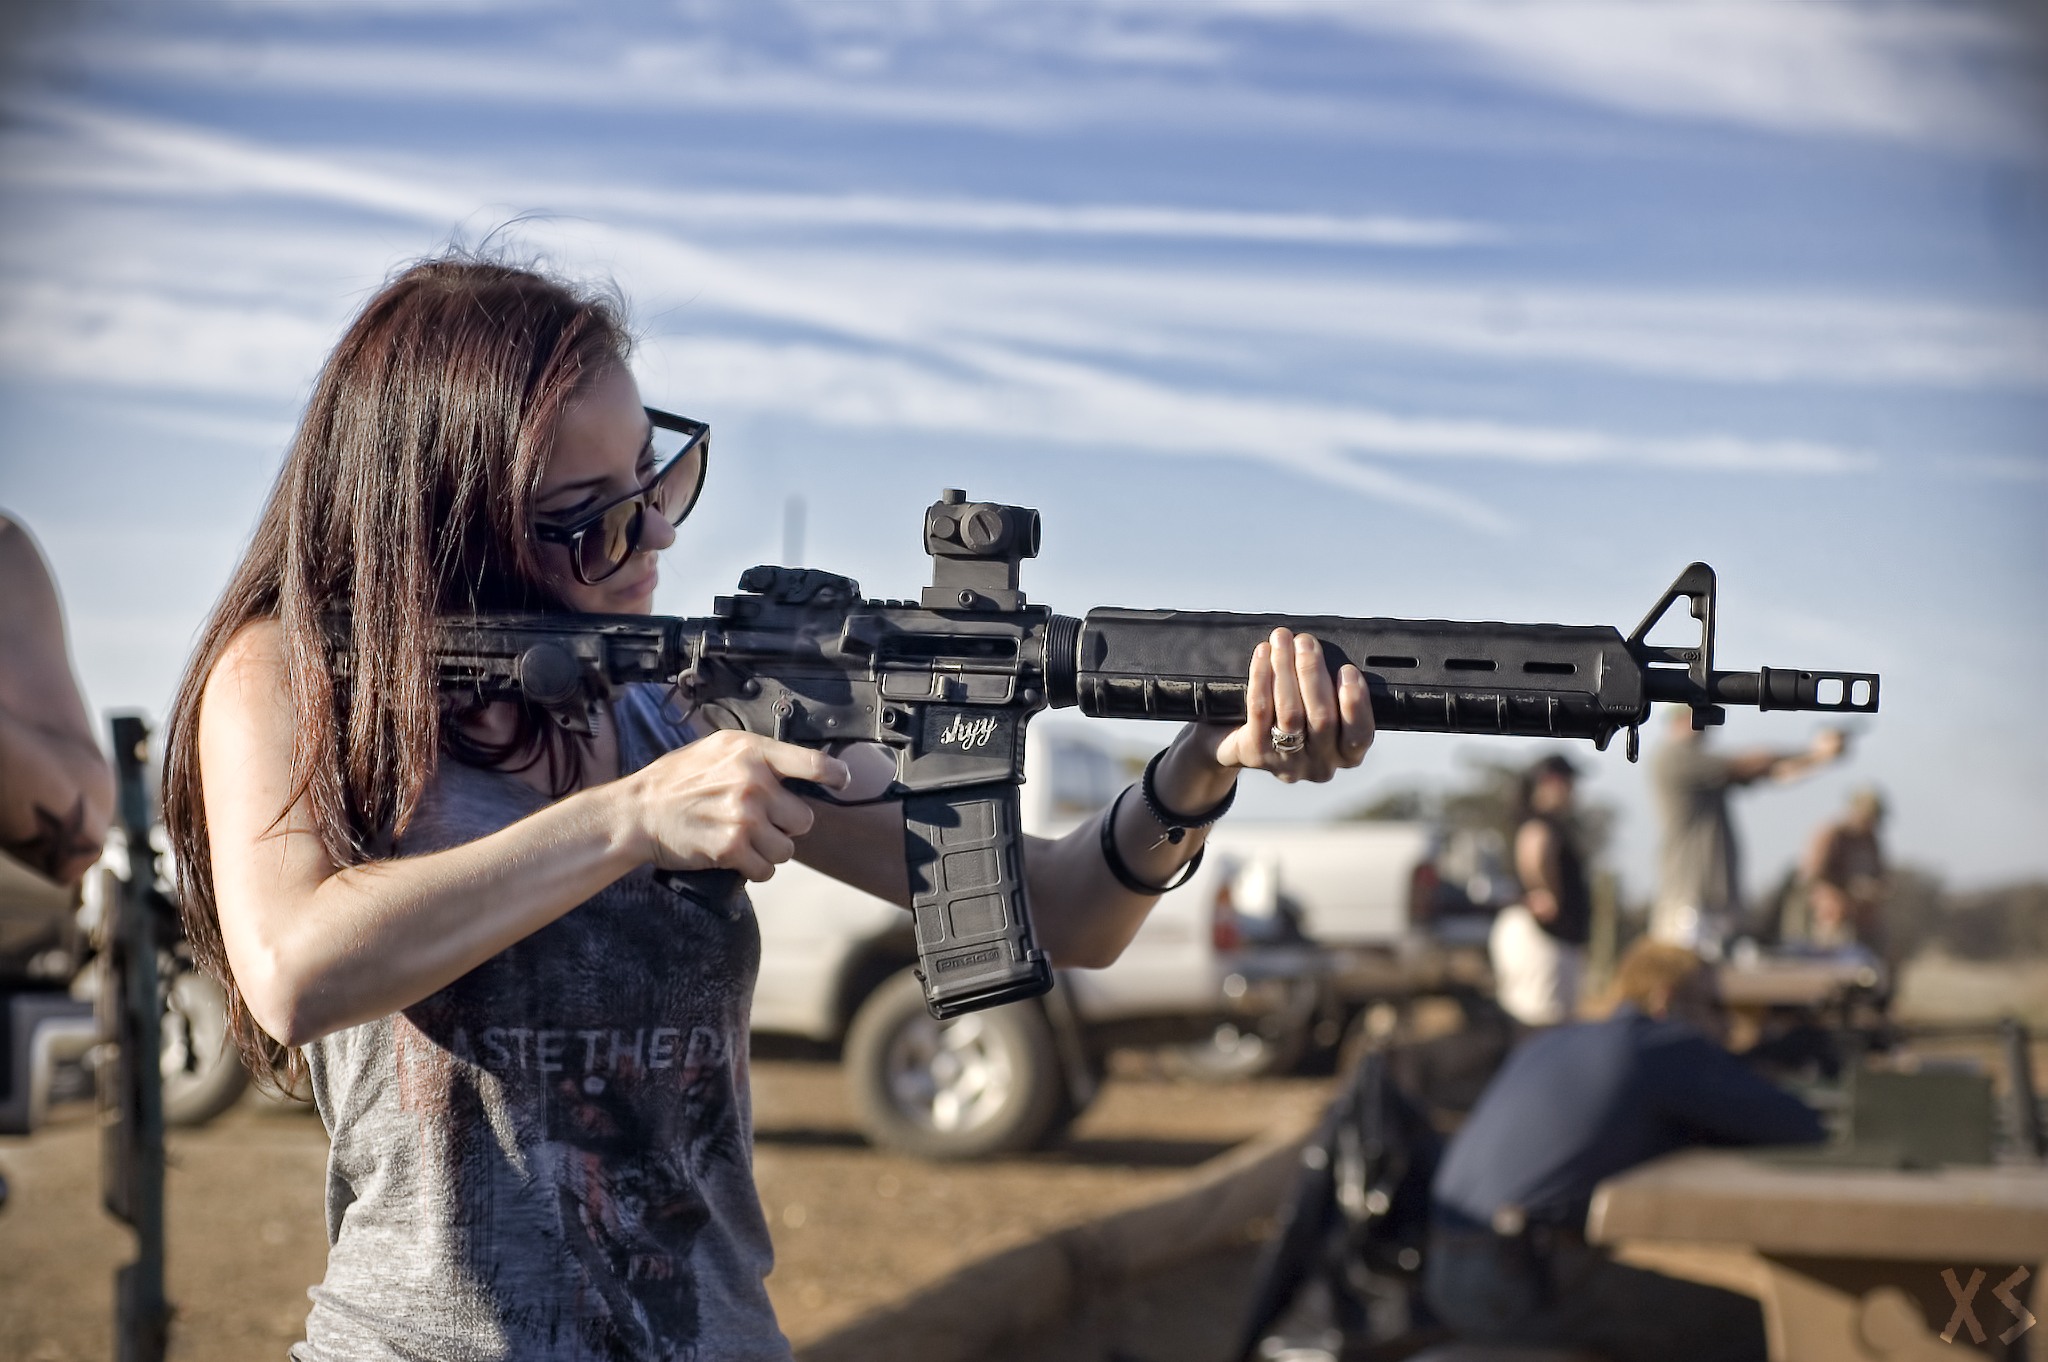 銃の壁紙を持つ少女,銃,銃器,撮影,射撃スポーツ,エアソフトガン